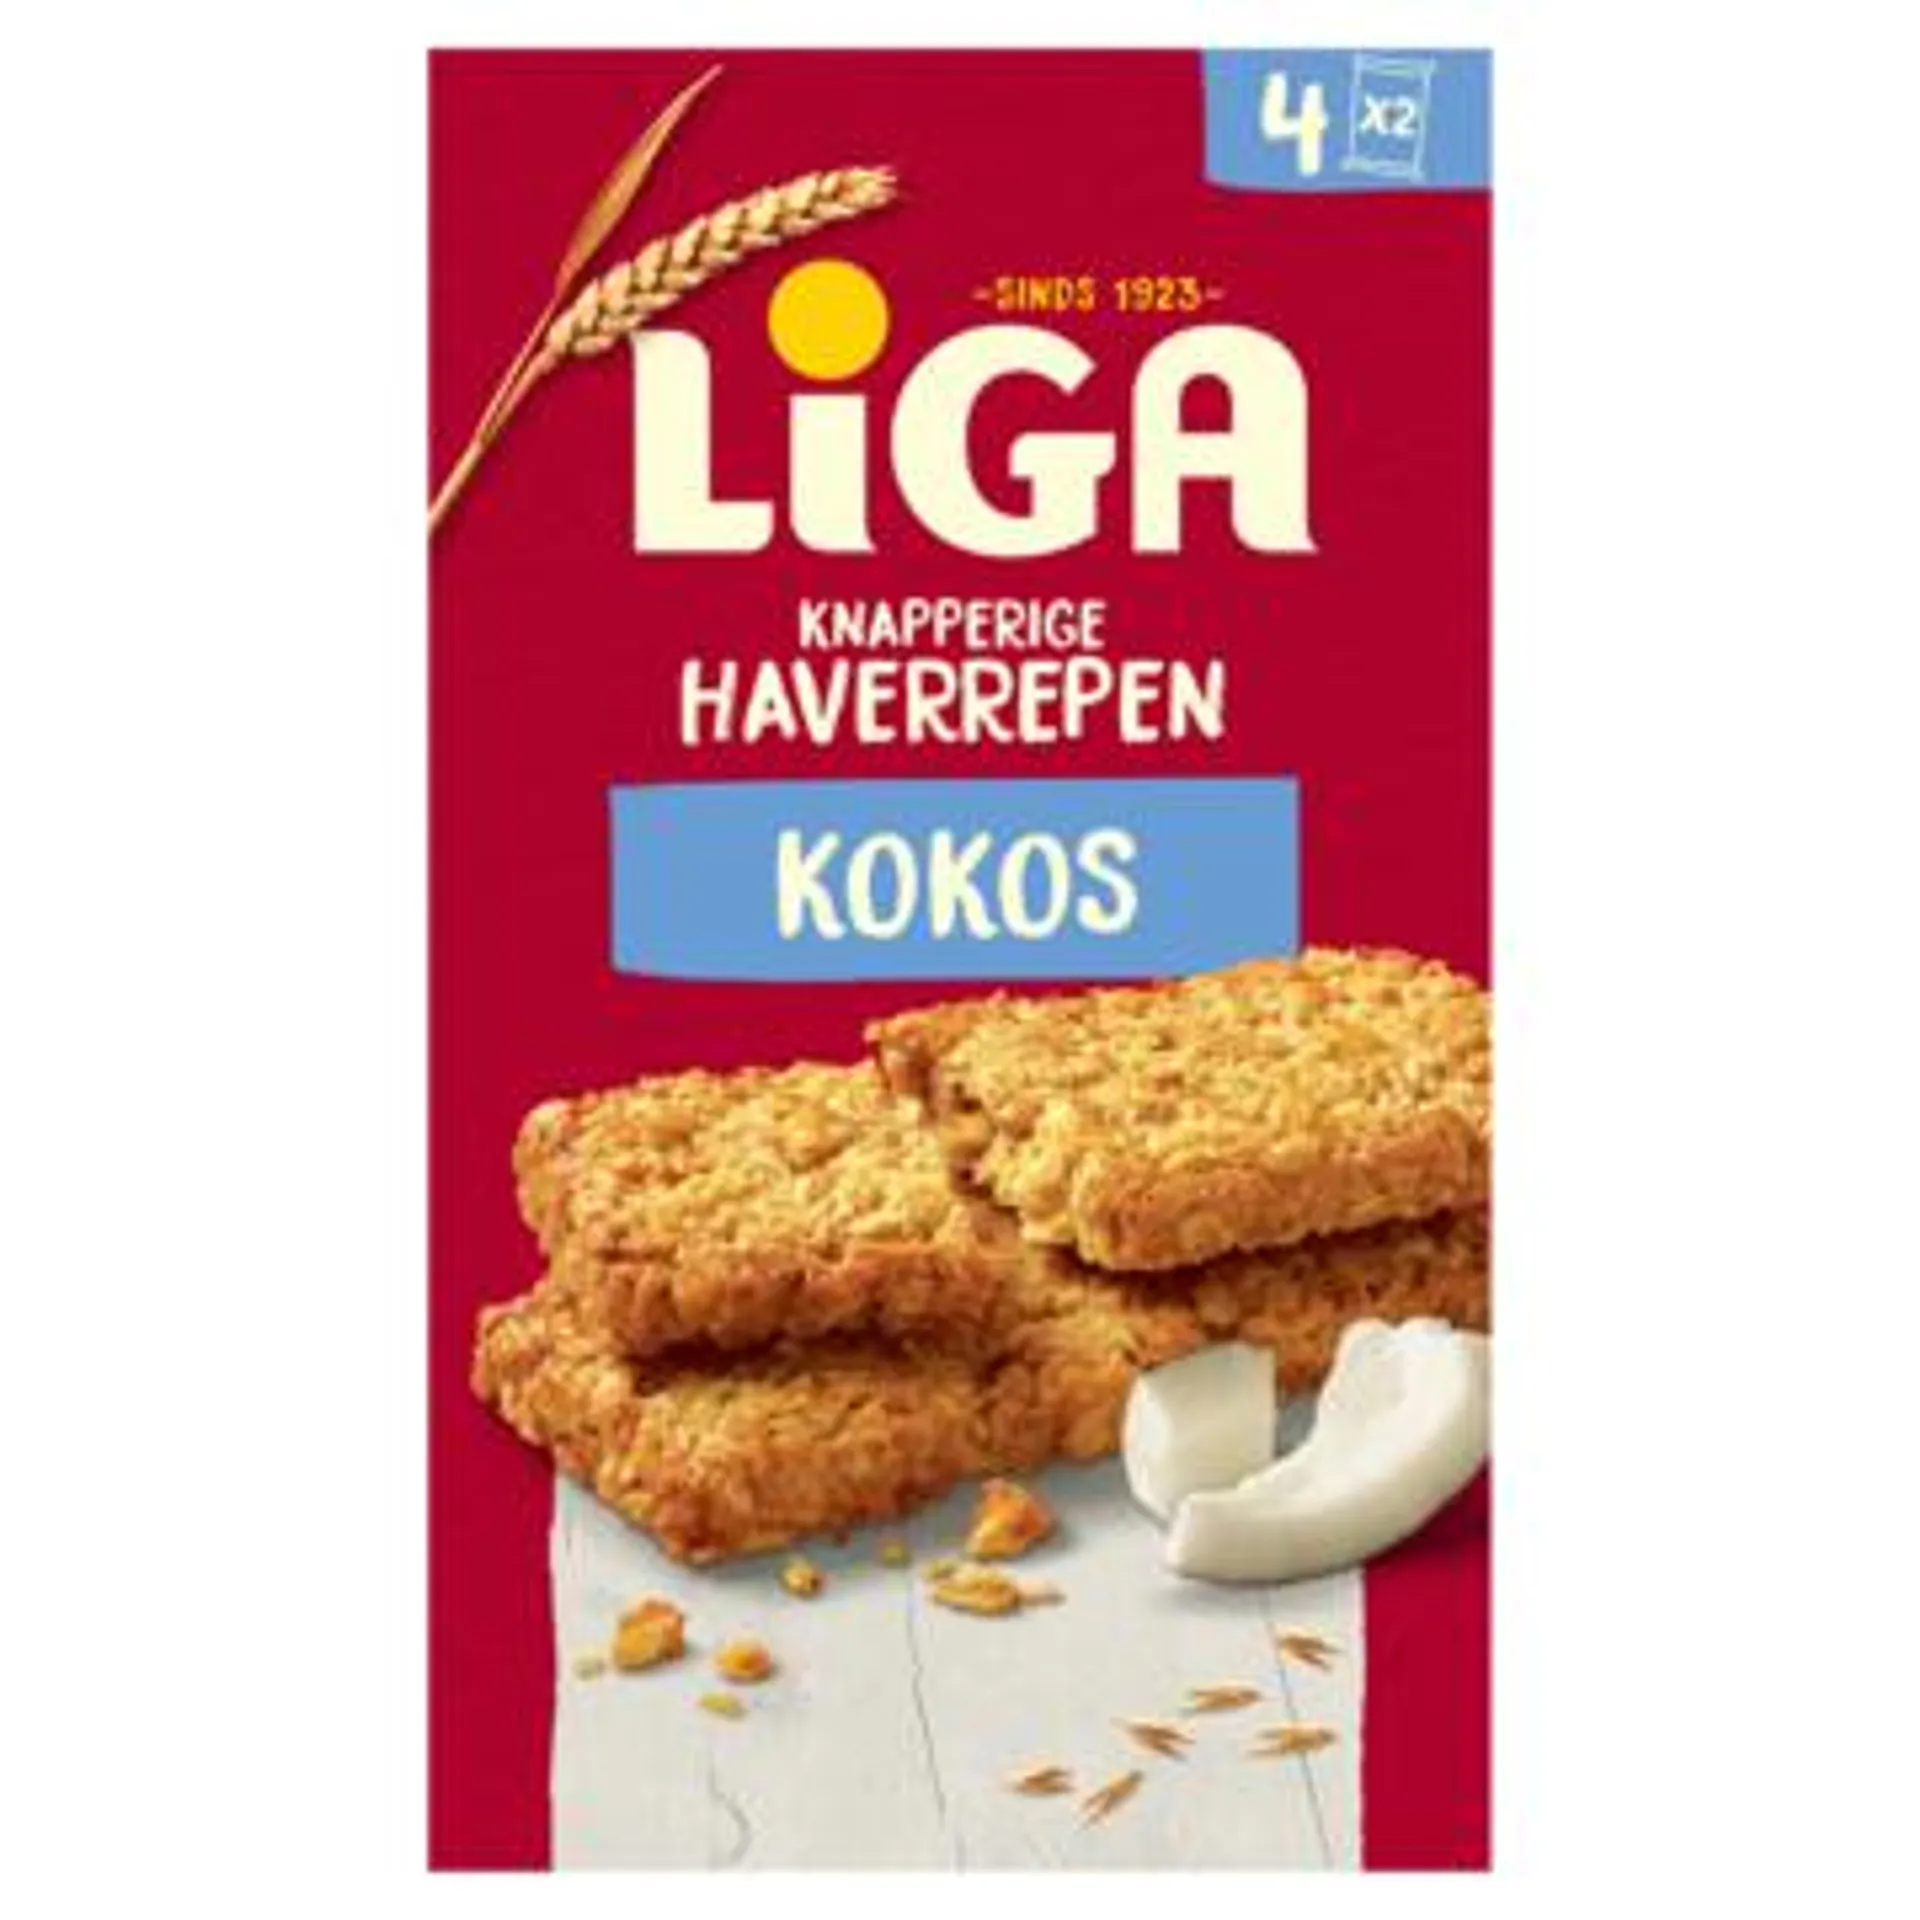 LiGA Knapperige Haverrepen Kokos 168g